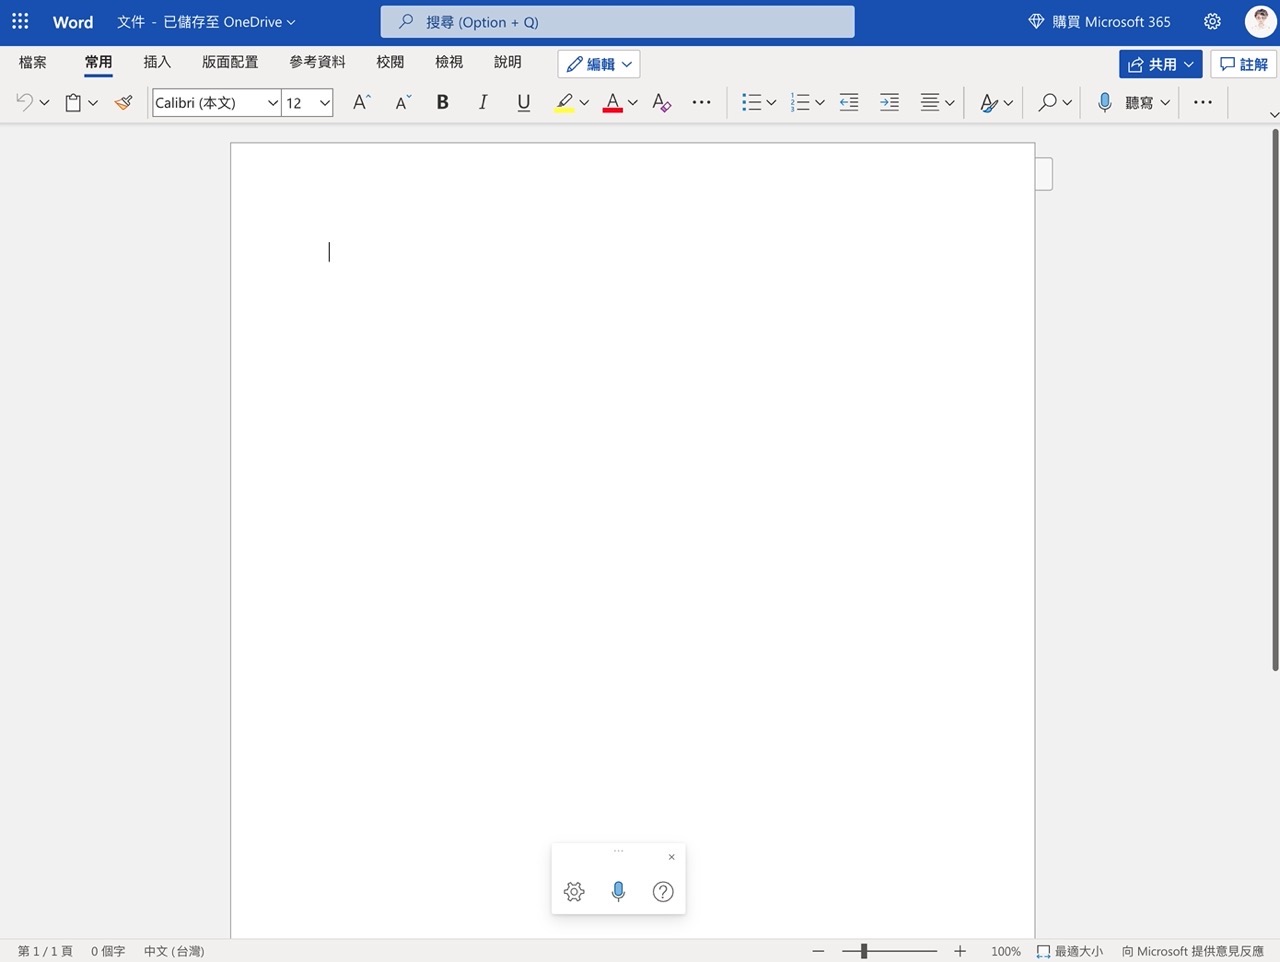 免費 Microsoft Office 網頁版 Word、Excel、PowerPoint